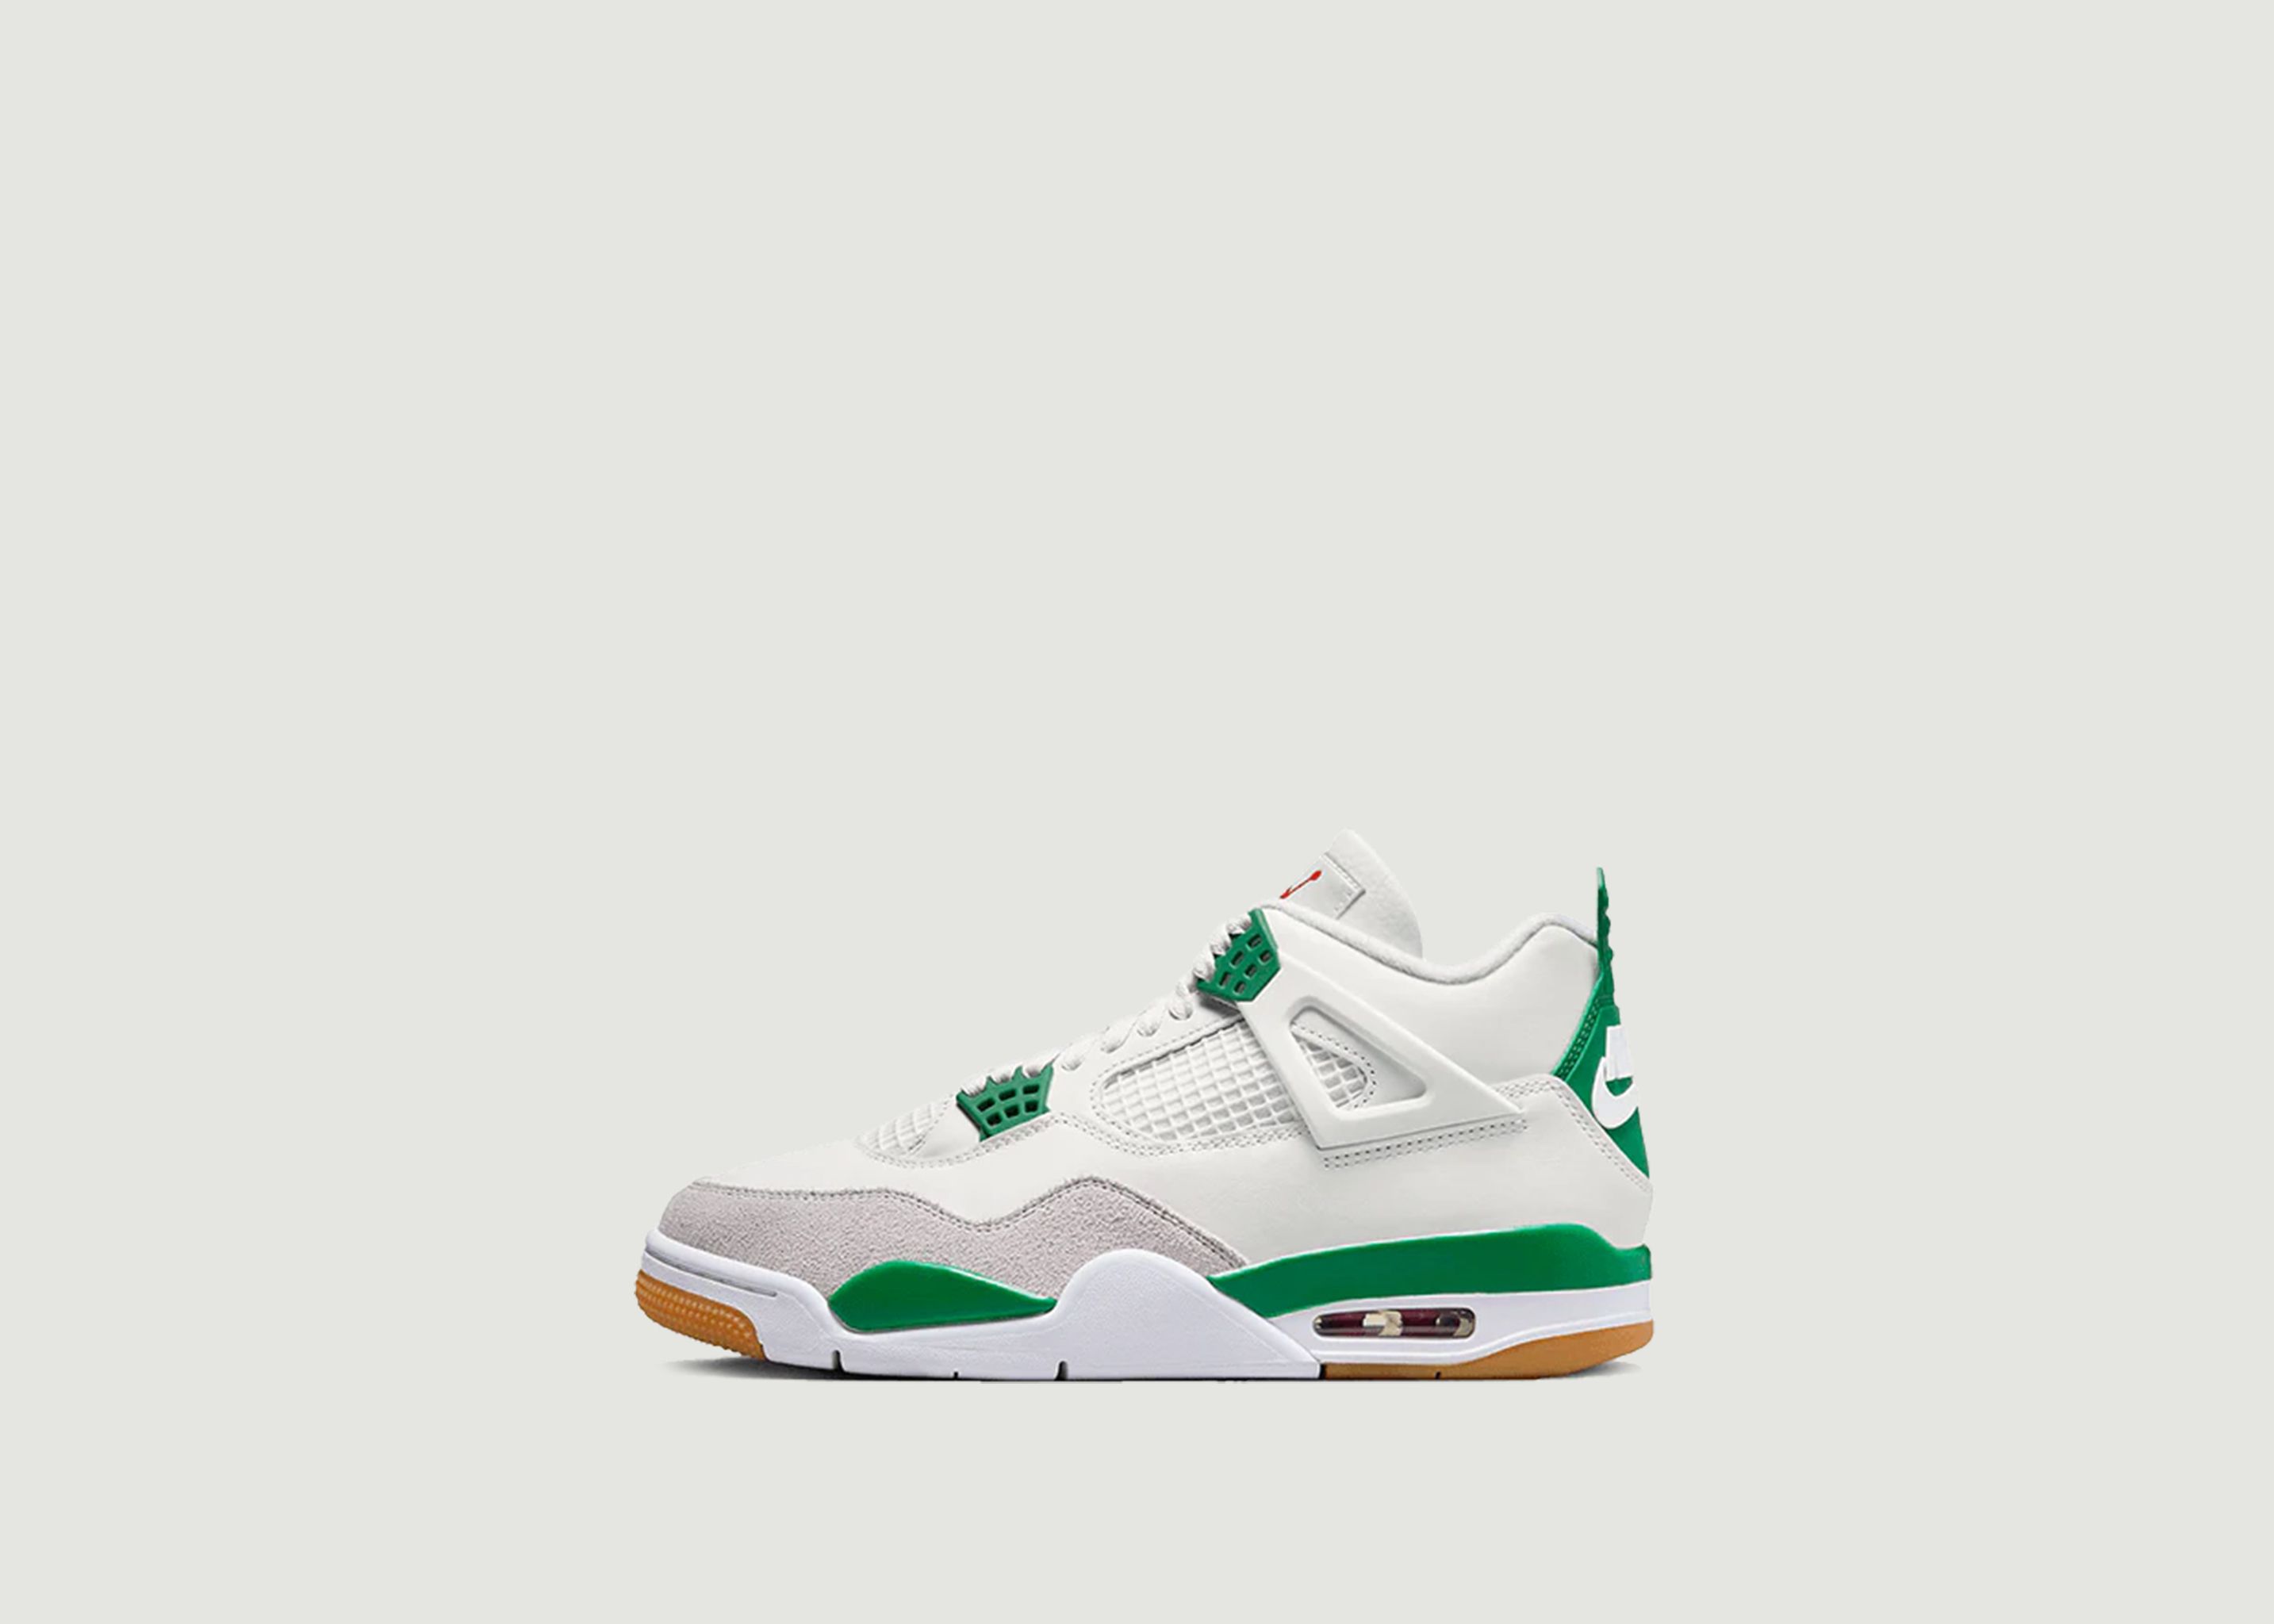 Air Jordan 4 Retro SB Pine Green Sneakers - Nike